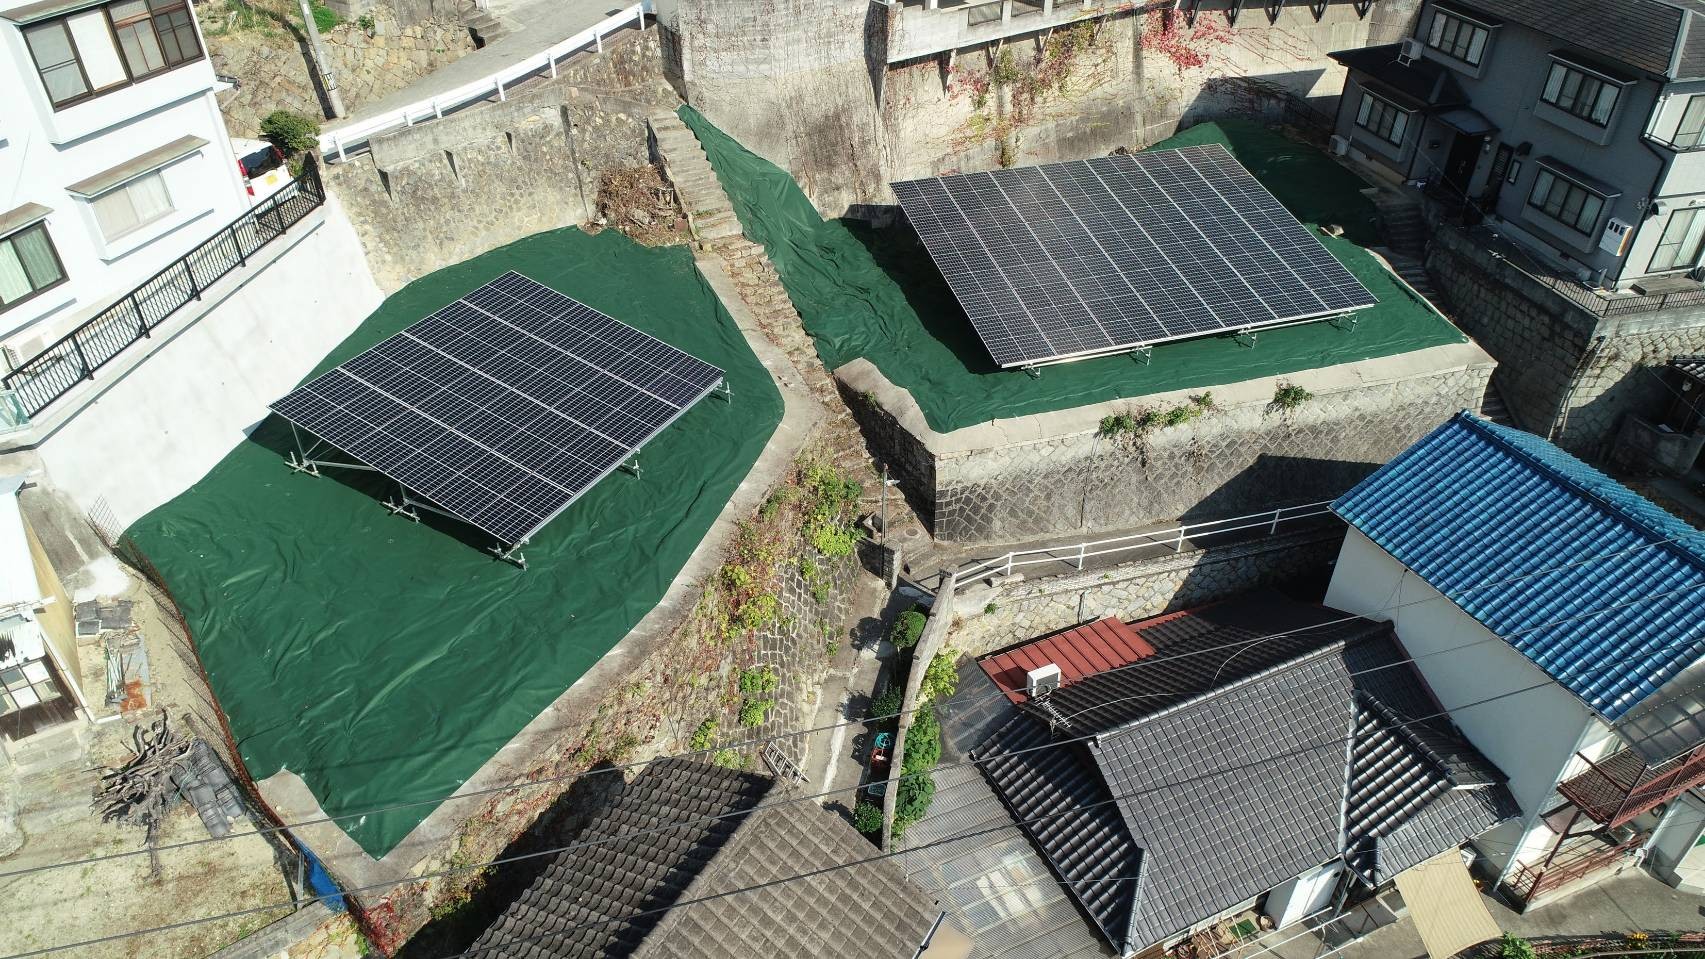 El proyecto de estructura de montaje fotovoltaico en tierra de 30KW finalizó en Japón en noviembre de 2020